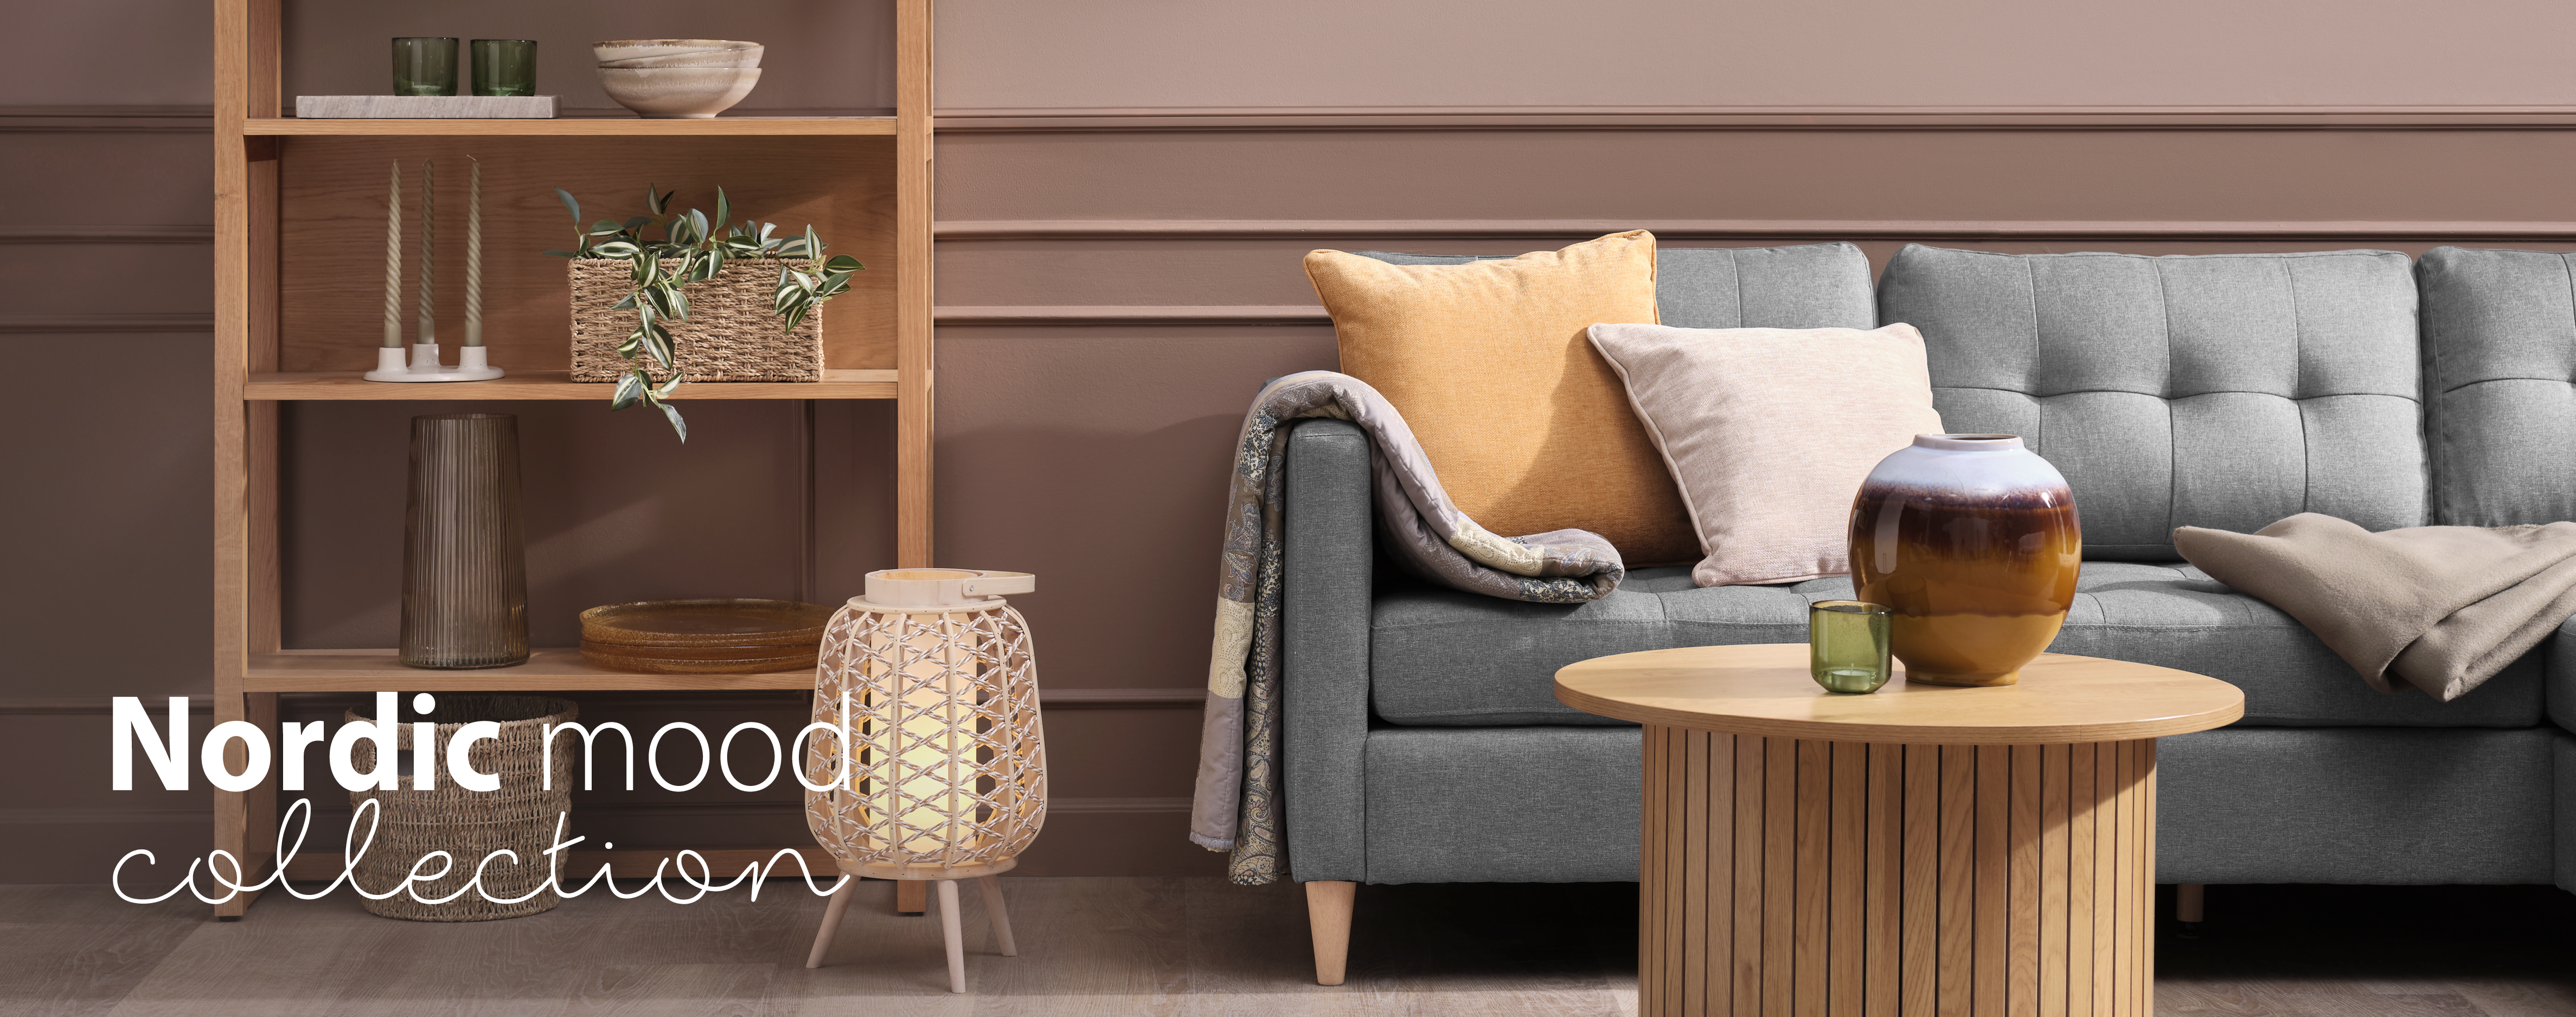 Inrichting met meubels in natuurlijke materialen en warme kleuren